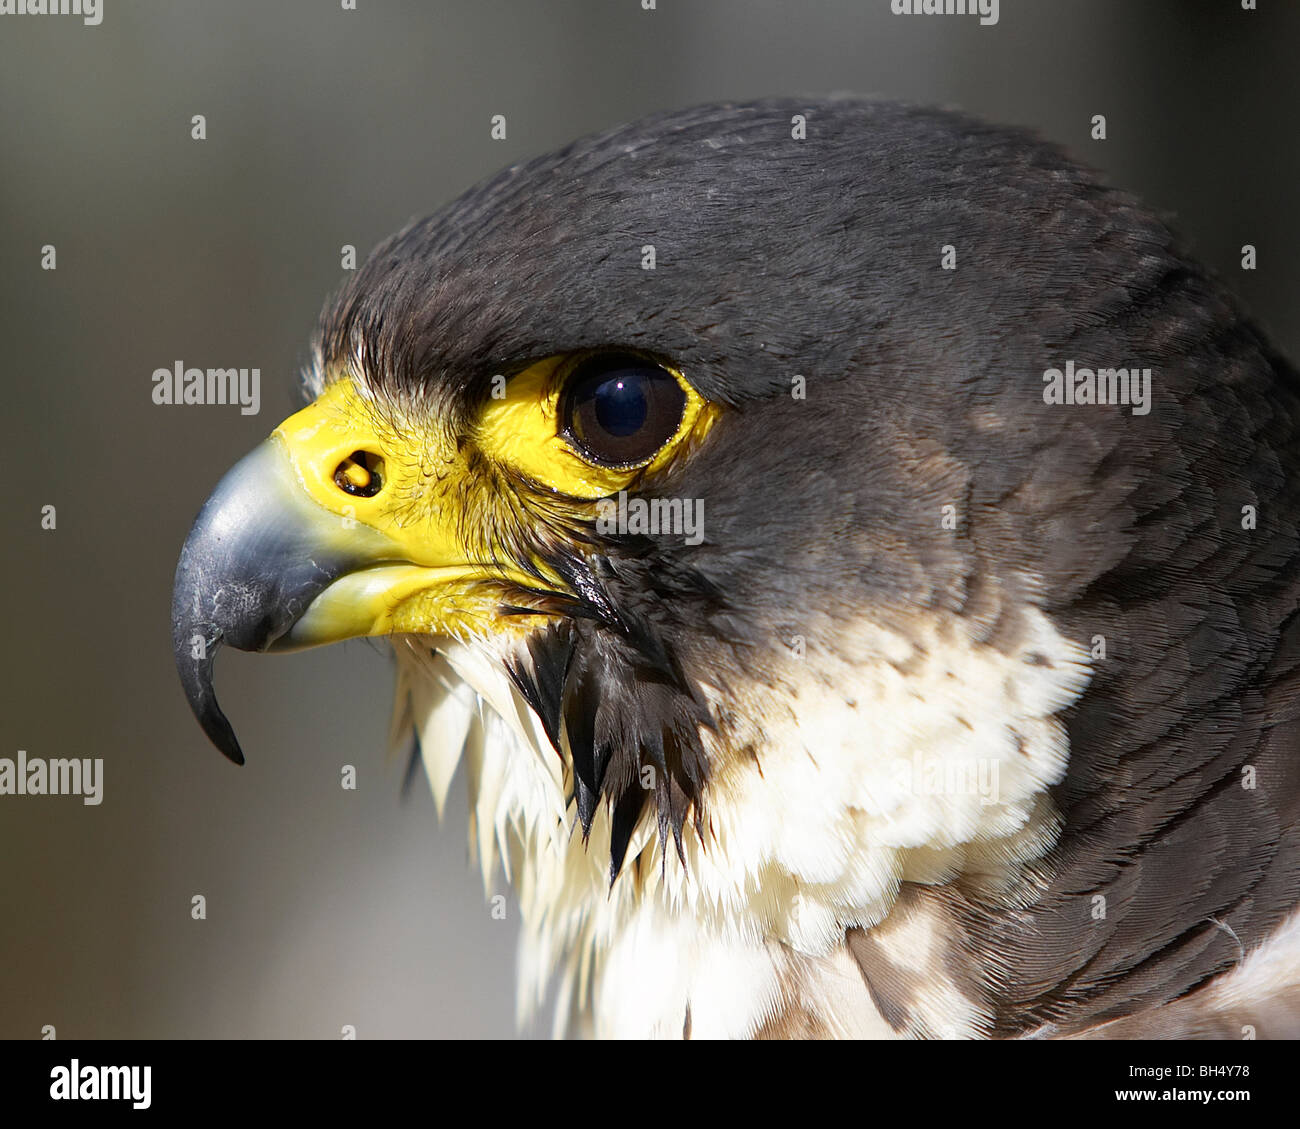 Peregrine falcon in profile. Stock Photo